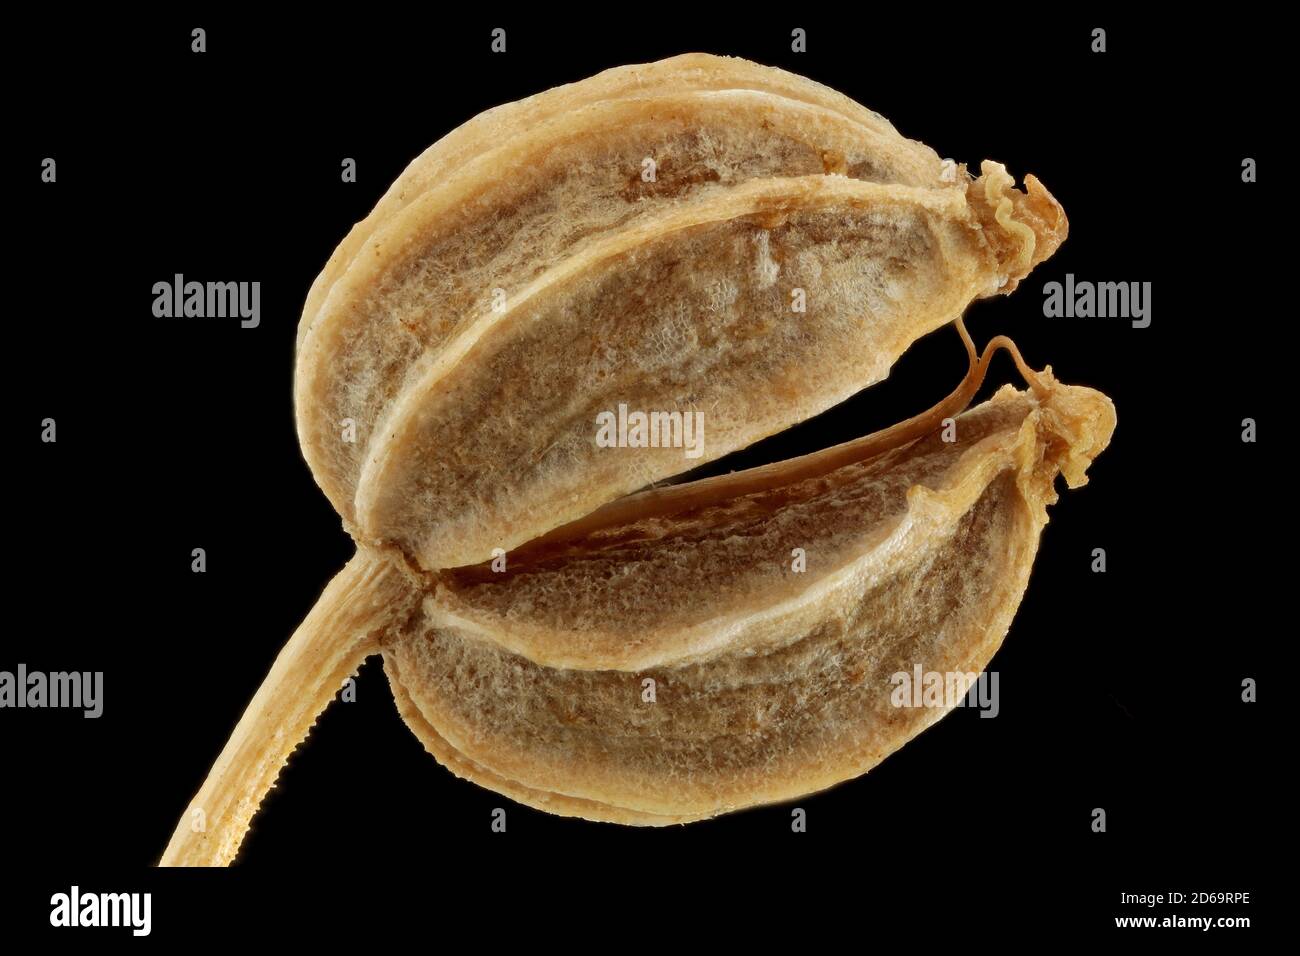 Conium maculatum, Hemlock, Gefleckter Schierling, primo piano, semi (frutti), lunghezza 3-4 mm Foto Stock